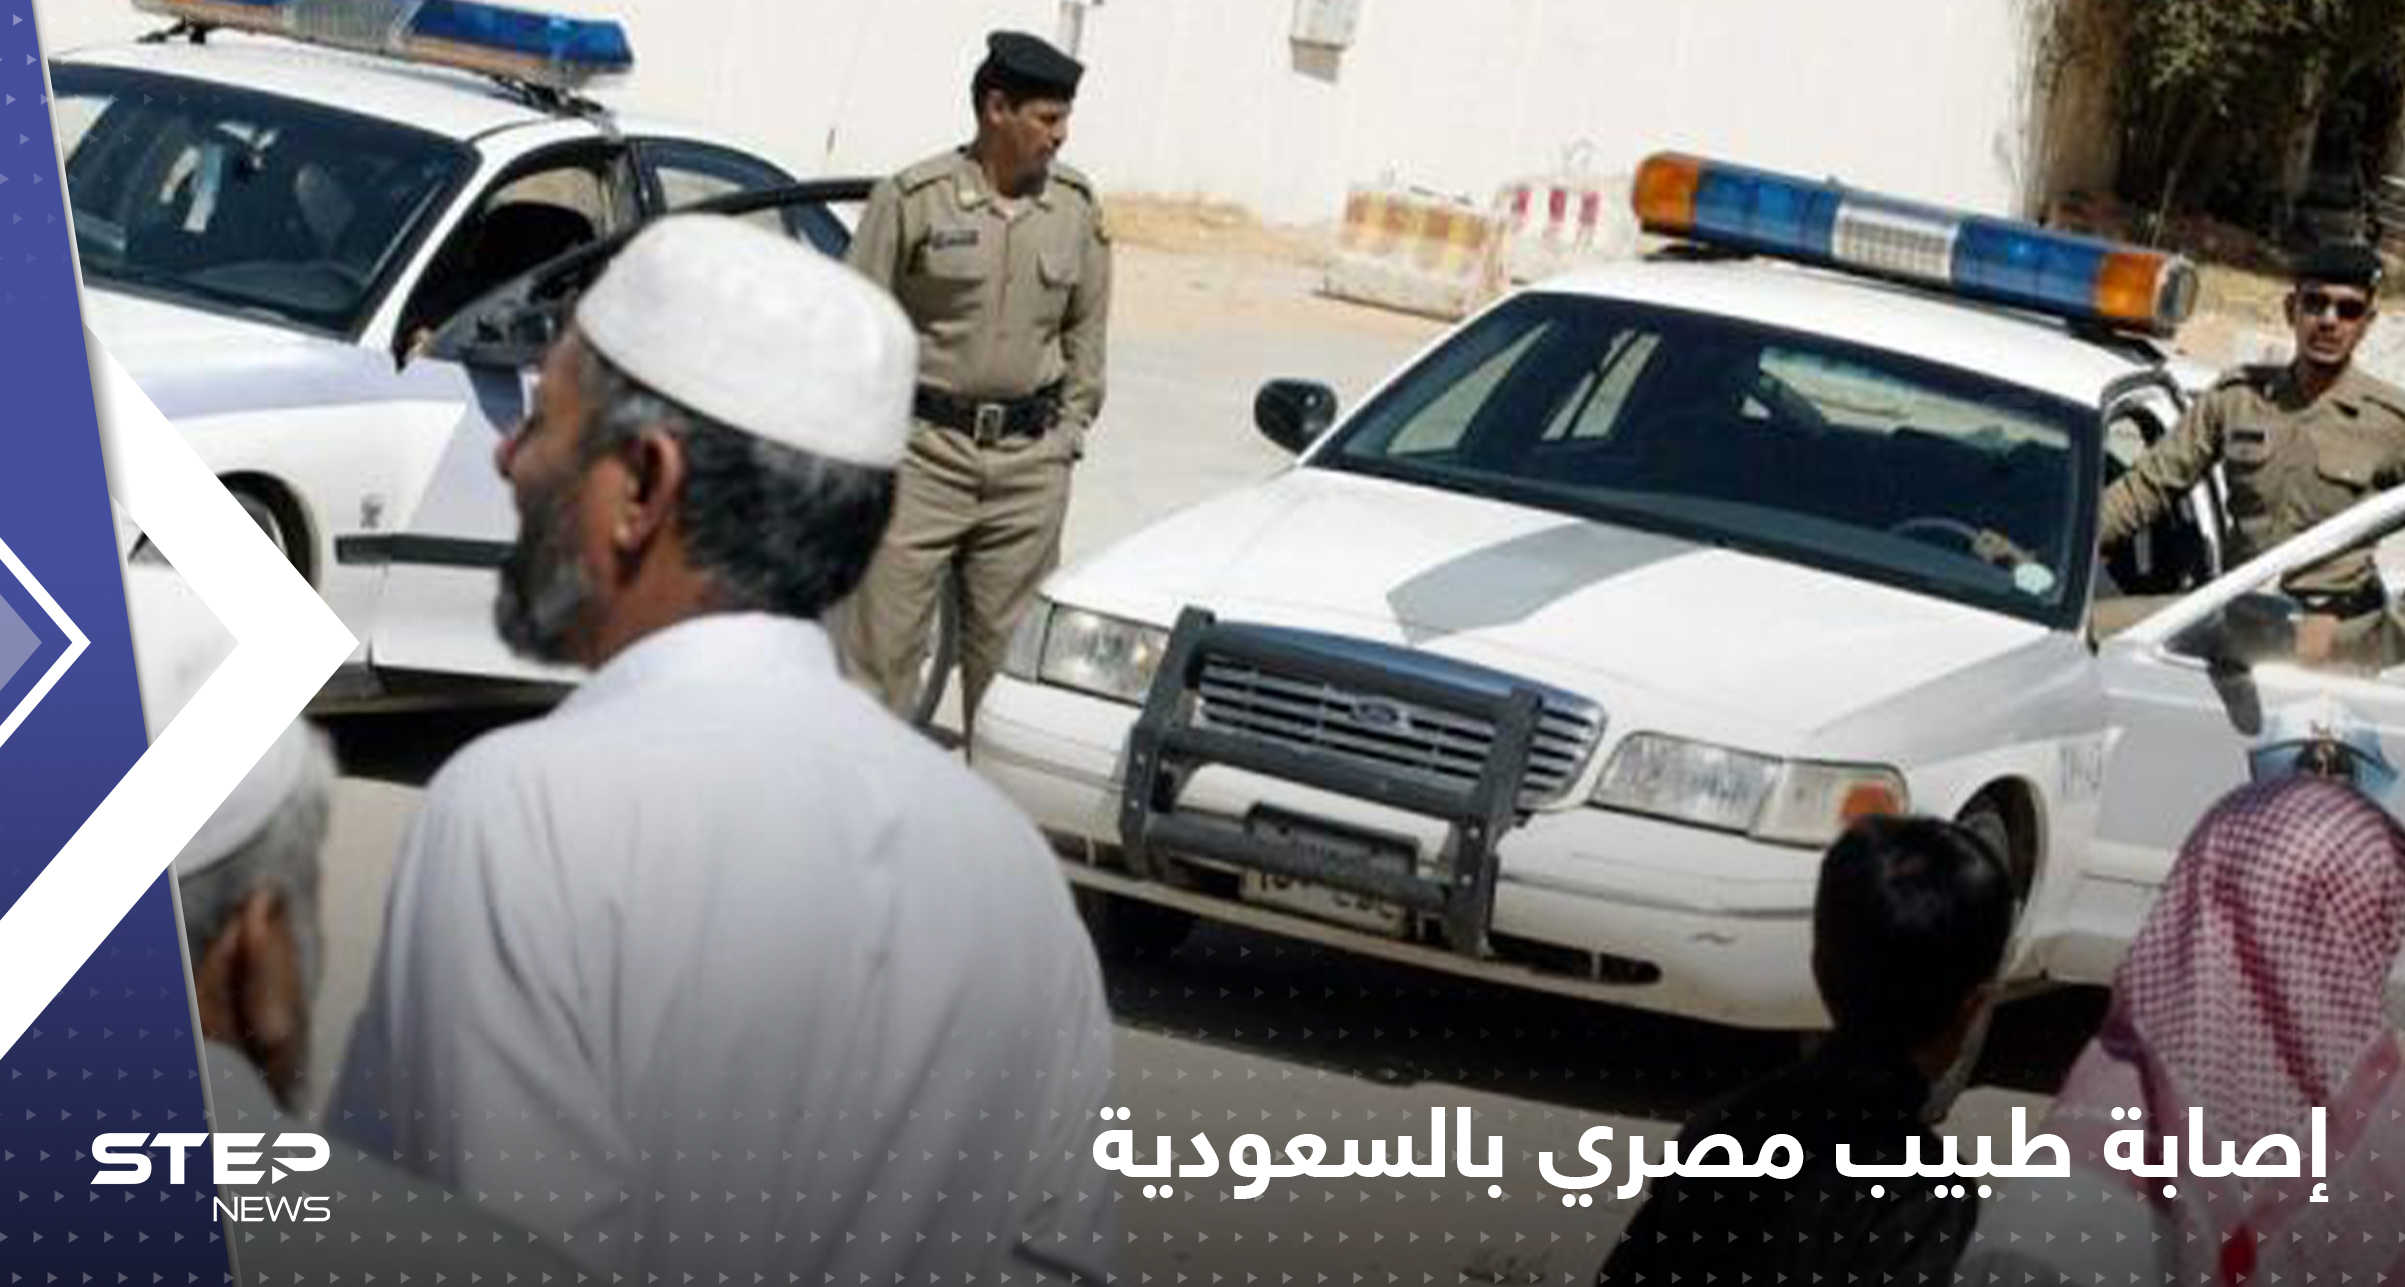 مواطن سعودي يطلق النار على طبيب مصري ويطعنه بسلاح أبيض